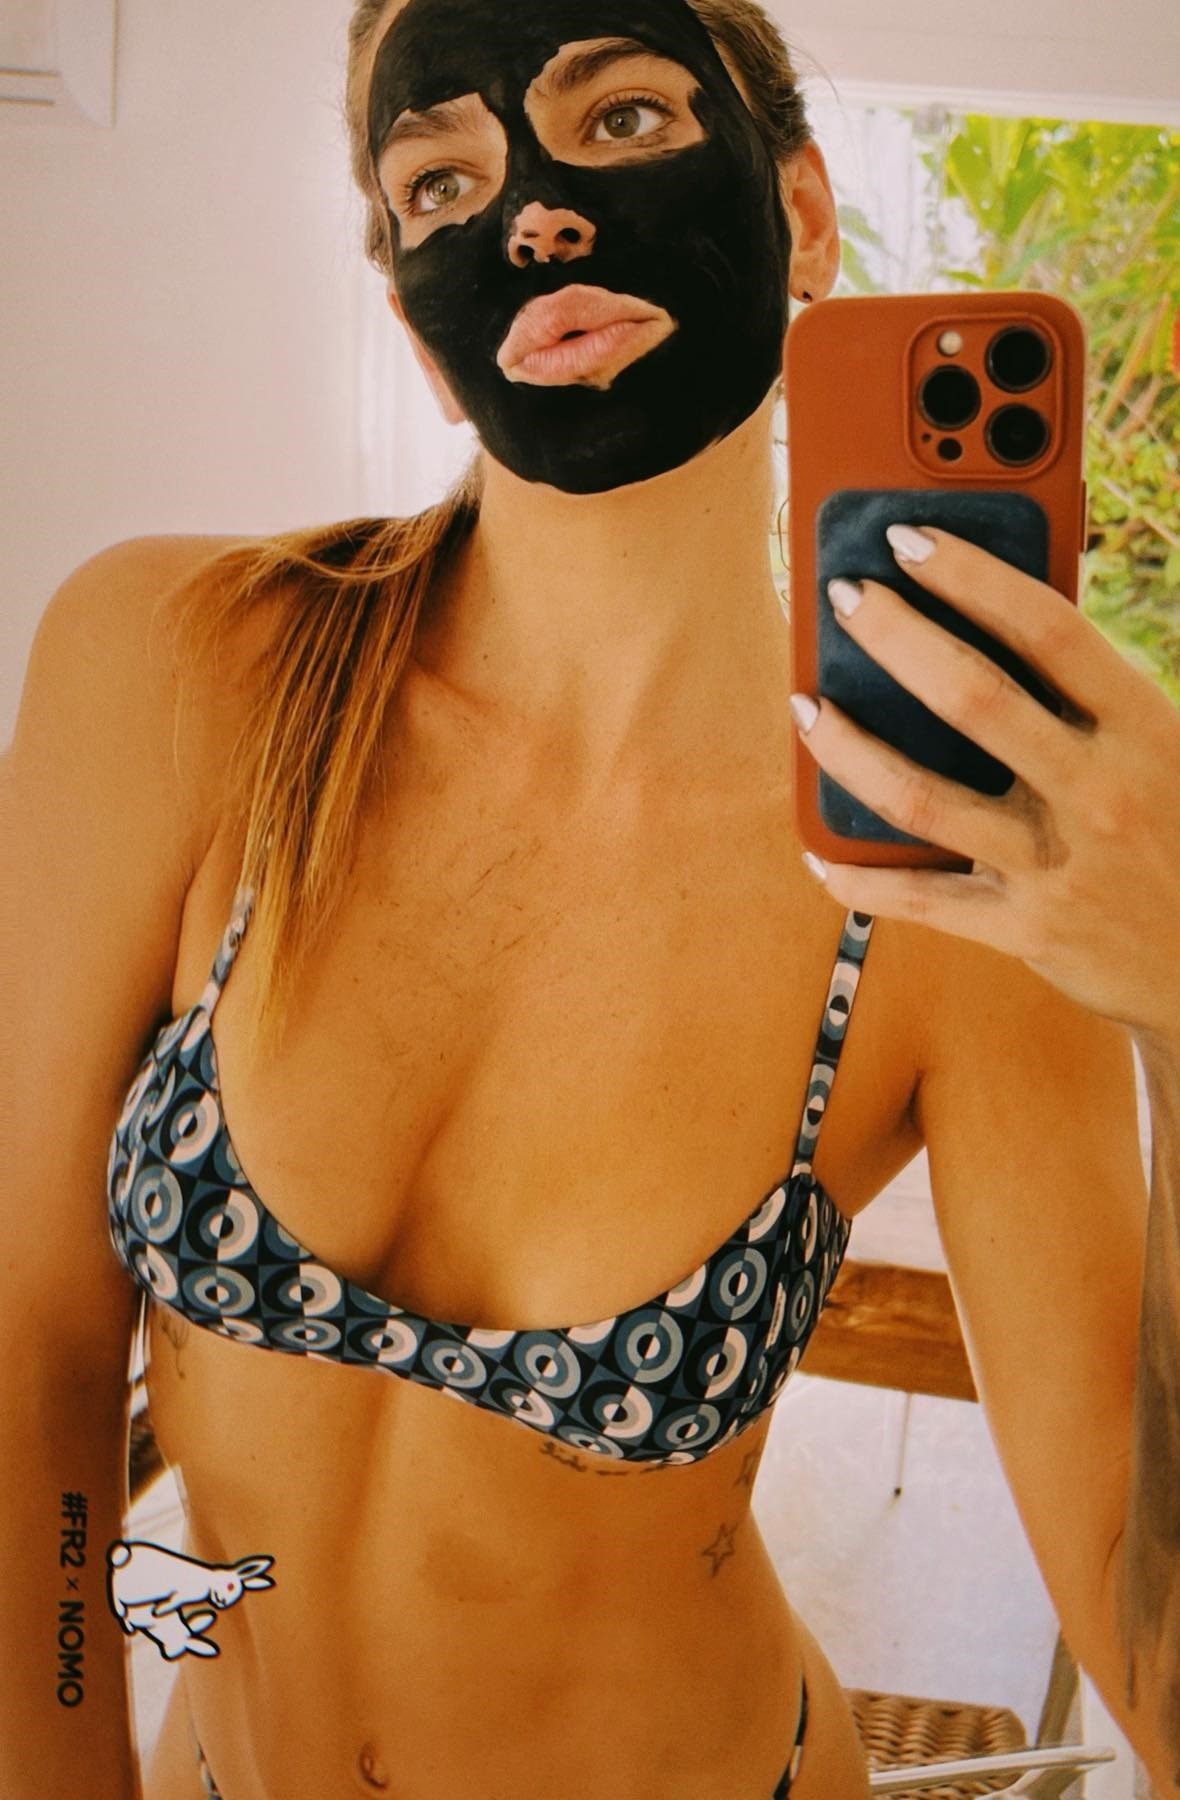 Mariana Goldfarb cuida da pele facial com máscara de tratamento (Foto: Reprodução/Instagram)